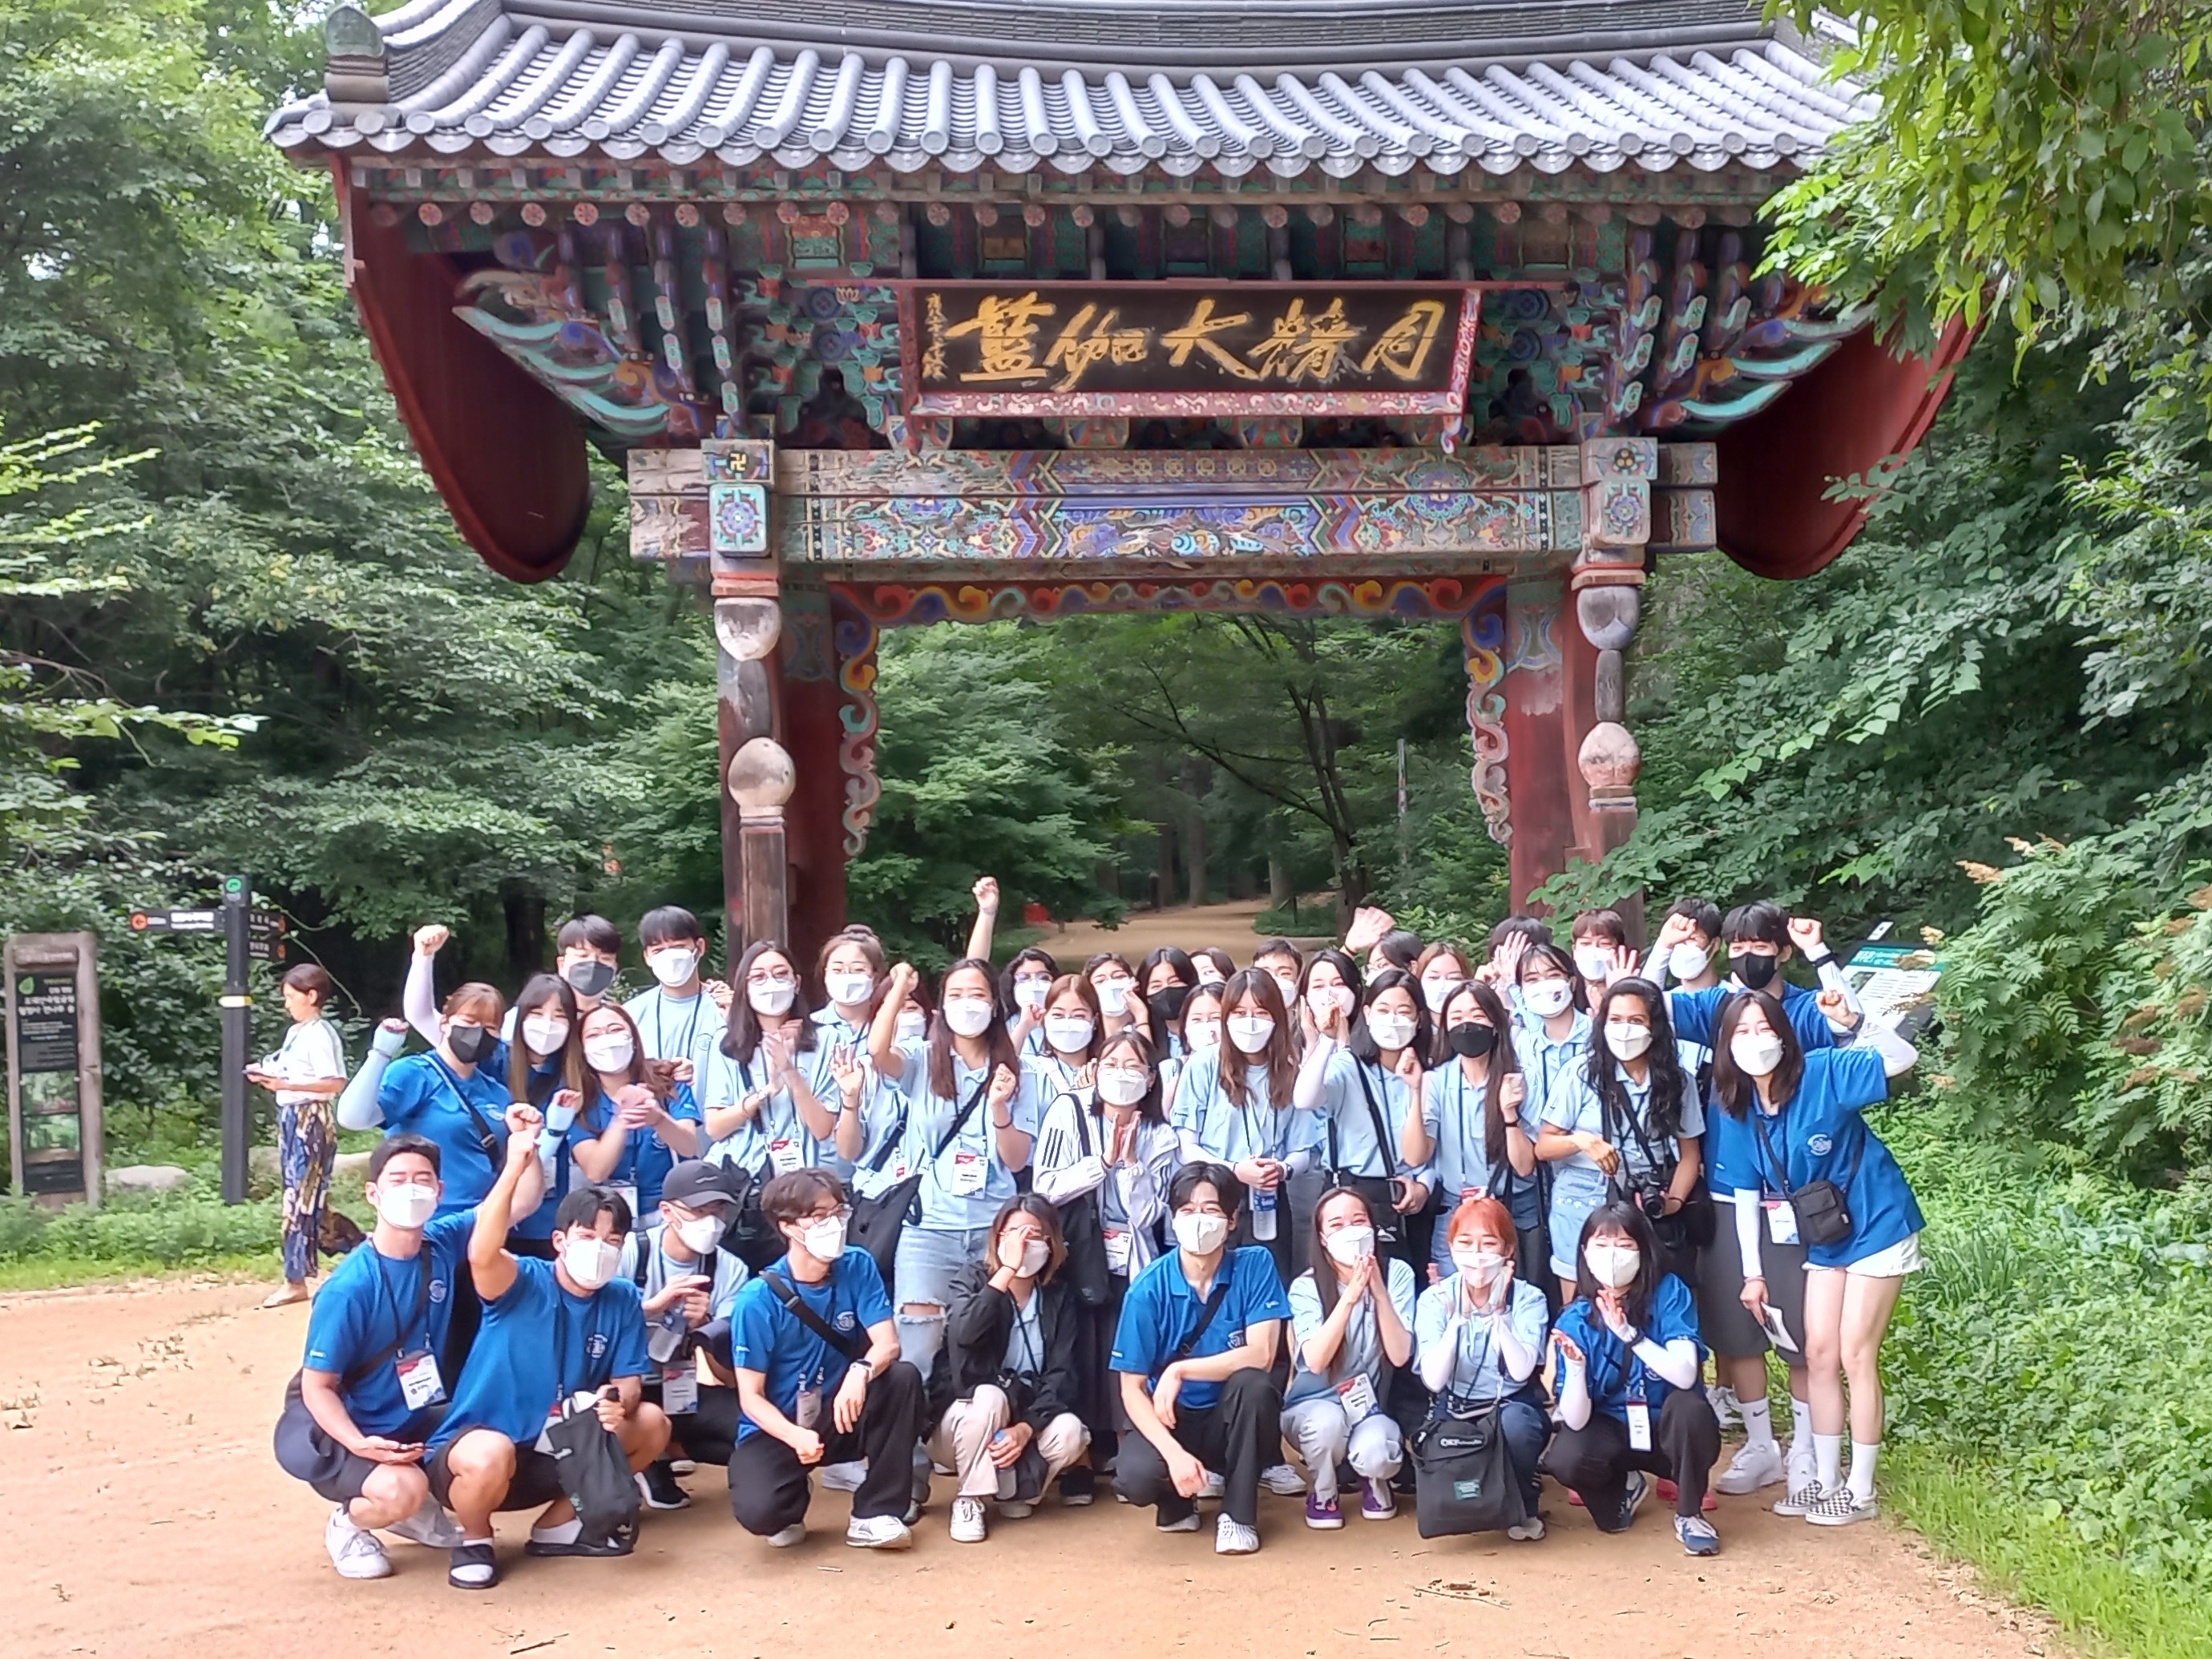 Участники команды из Пхенчхана посещают храм Вольчжонса в Пхенчхане